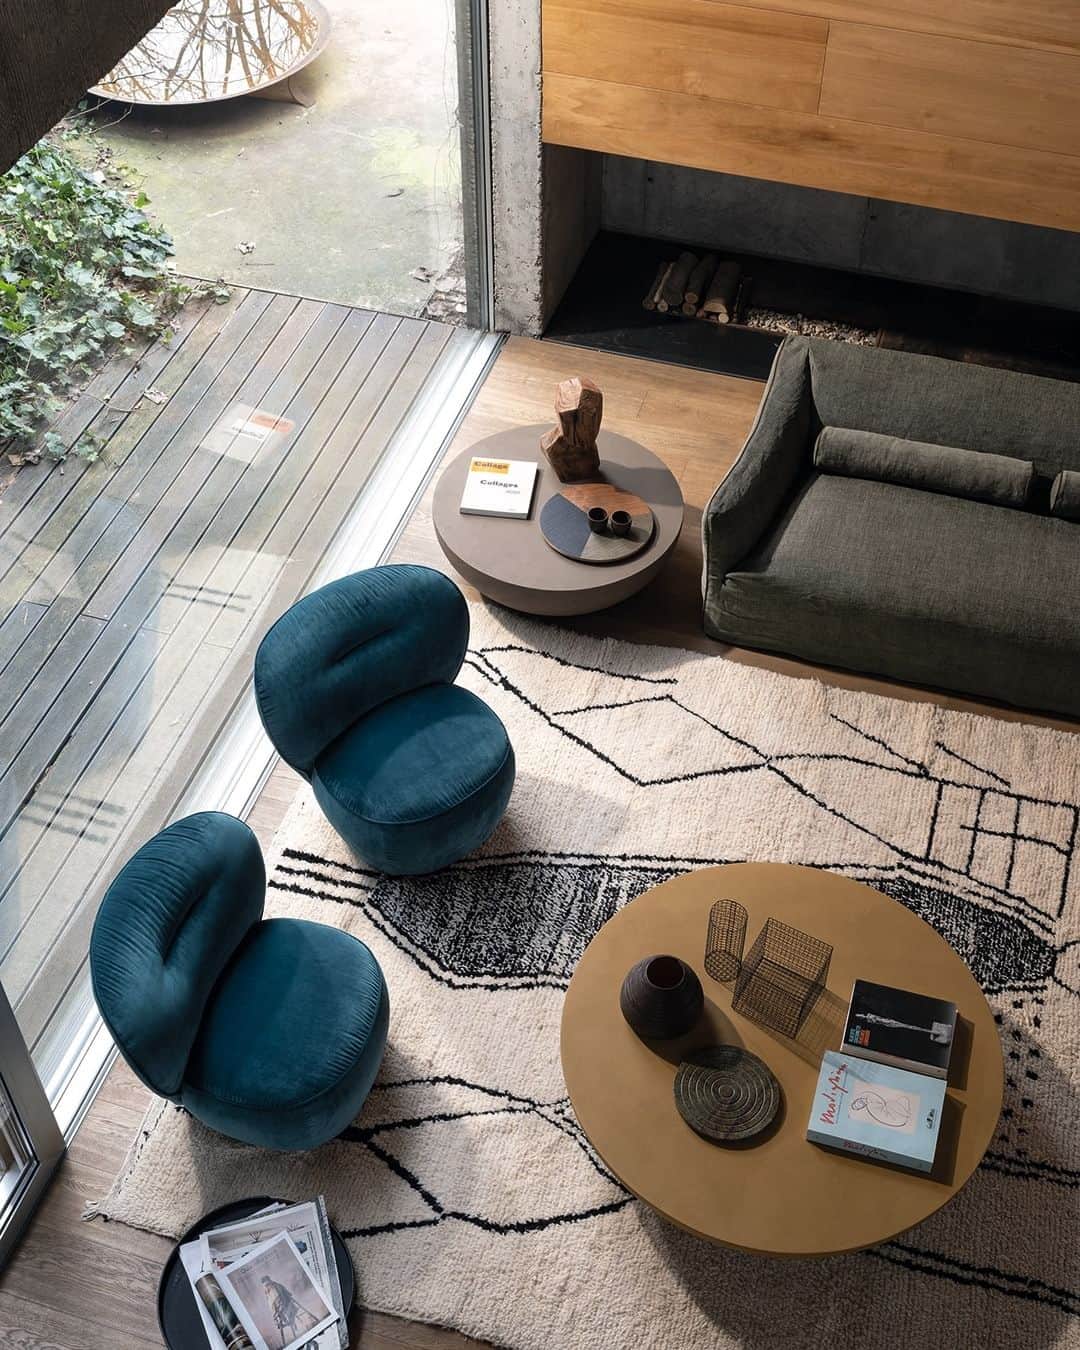 GERVASONI JAPAN / ジェルバゾーニ ジャパンのインスタグラム：「【 LOLL07 / the perfect contemporary living room setup 】  コンテンポラリーなリビングルームは、 テクスチャーと素材がミックスされ、 魅力的でスタイリッシュな空間を作り出しています。  LOLLのアームチェアは柔らかく包み込むような座り心地で、 完璧なプロポーションです。  This contemporary living room features a mix of textures and materials, creating a space that is both inviting and stylish. The Loll armchairs are soft and enveloping, with inviting seats and impeccable proportions. ⁠  〰〰〰〰〰〰〰〰〰〰〰〰〰〰〰  【 Christmas with LOLL! 】 2023.11.21 tue - 12.25 mon  ころんとした可愛らしいフォルムで、 包み込むような座り心地のLOLL。  期間中、 LOLL07 or LOLL08 or LOLL09 を ご購入いただいた方に 配送料をサービスいたします！  今年の冬は、 LOLLと一緒はいかがですか？ 白くまのようなもこもこしたファブリックで 家族や友達と心地良いひとときをお過ごしください。  〰〰〰〰〰〰〰〰〰〰〰〰〰〰〰  【 Lino Bianco Campaign 】 2023.9.1日 thu ~ 12.31 sun  Lino Bianco Cover Campaign(リノビアンコ キャンペーン)を 今年も実施しております！  期間中、カバーリングタイプのソファ、チェア、ベッドを ご注文のお客様に 「リノ ビアンコ カバー ※白いカバー」を1セット プレゼントいたします。 ※アウトドアシリーズ は除きます。  リネンとコットンのカバーで、 触り心地もさらさらしており、とても人気のカバーです。 お洗濯もしていただけます。 ※乾燥機のご使用はお避け下さい  皆様のお越しを心よりお待ち申し上げております。  〰〰〰〰〰〰〰〰〰〰〰〰〰〰〰  . . .  #gervasonitokyo #gervasoni #ジェルバゾーニ #インテリア #家具 #interior #furniture  #ホテルライク #リゾートインテリア #ホテルインテリア  #お部屋 #リビング #お部屋づくり #ルームツアー  #インテリアコーディネート #ライフスタイル #FourSeasonsPromotion #linobianco #着せ替えソファ #カバーリング #ソファ #表参道」